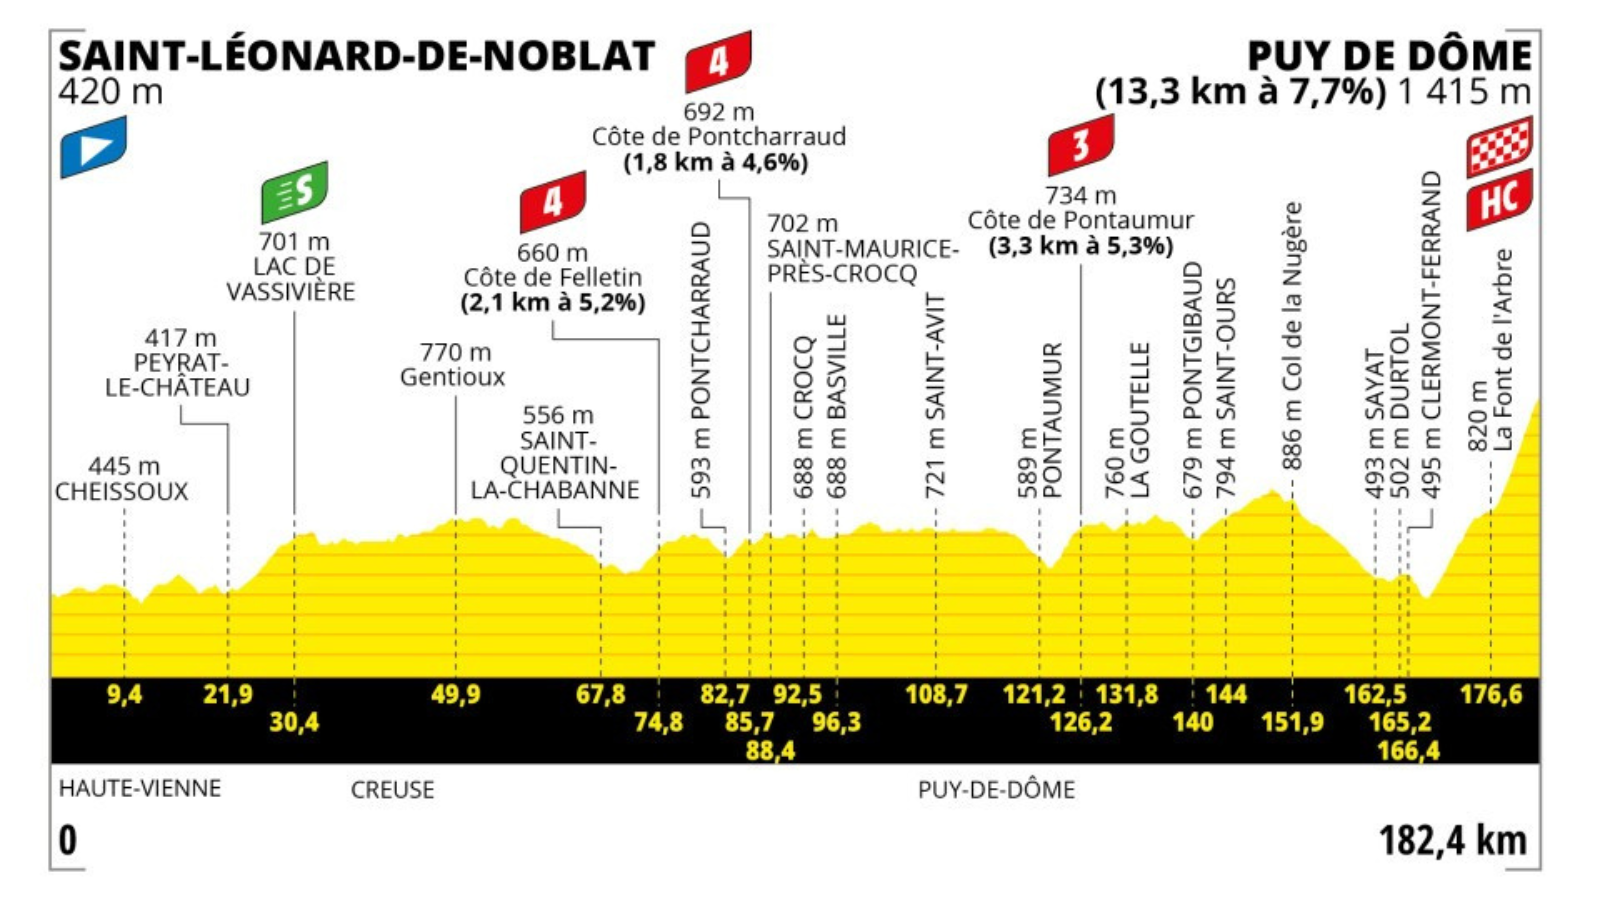 Puy de Dôme stage at Tour de France 2023 on 9 July 2023.